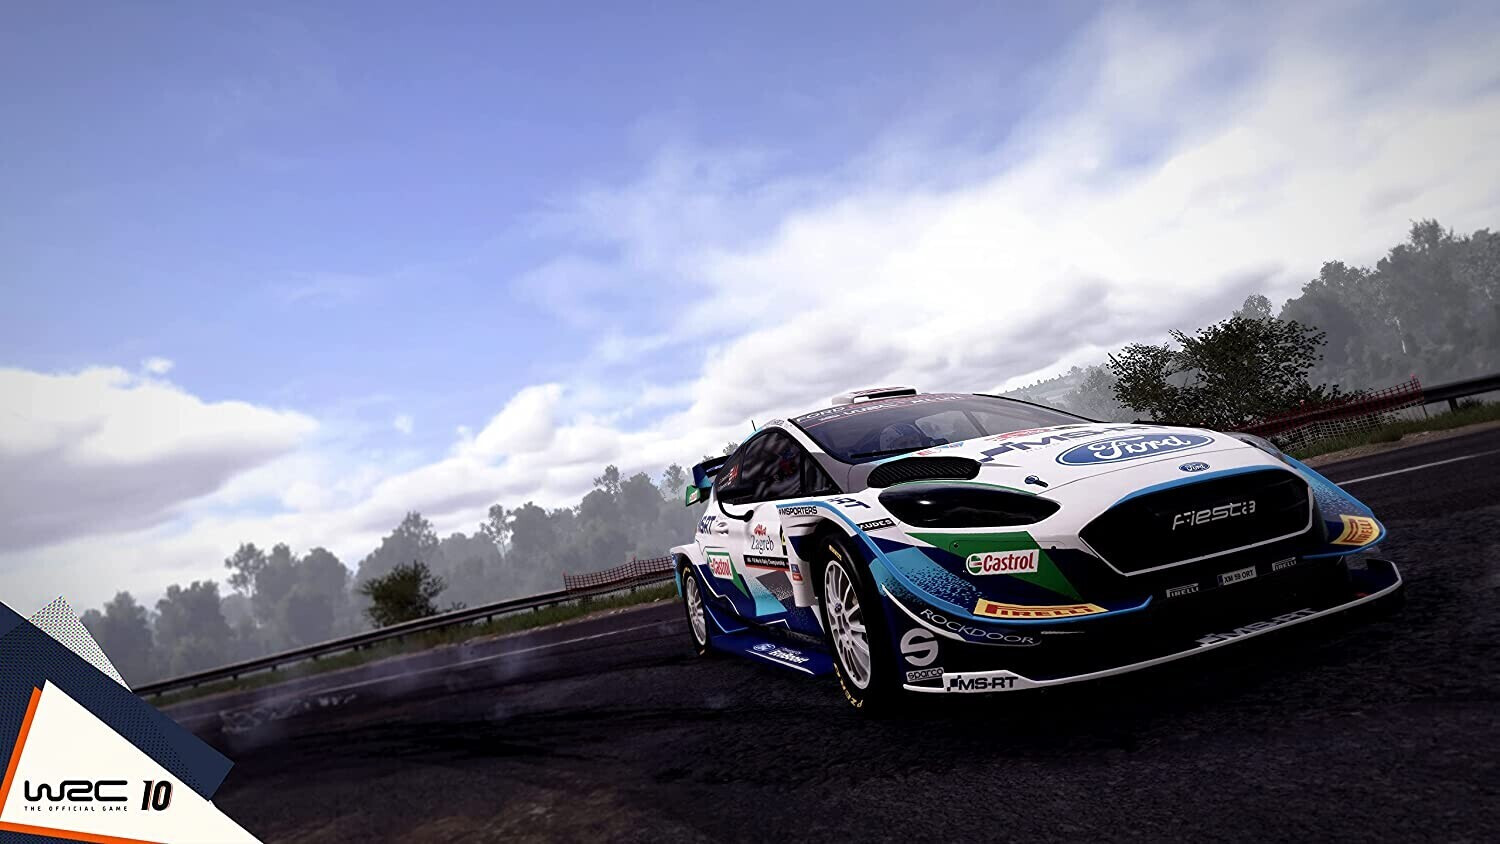 WRC 10 (PS4) a € 15,99 (oggi)  Migliori prezzi e offerte su idealo